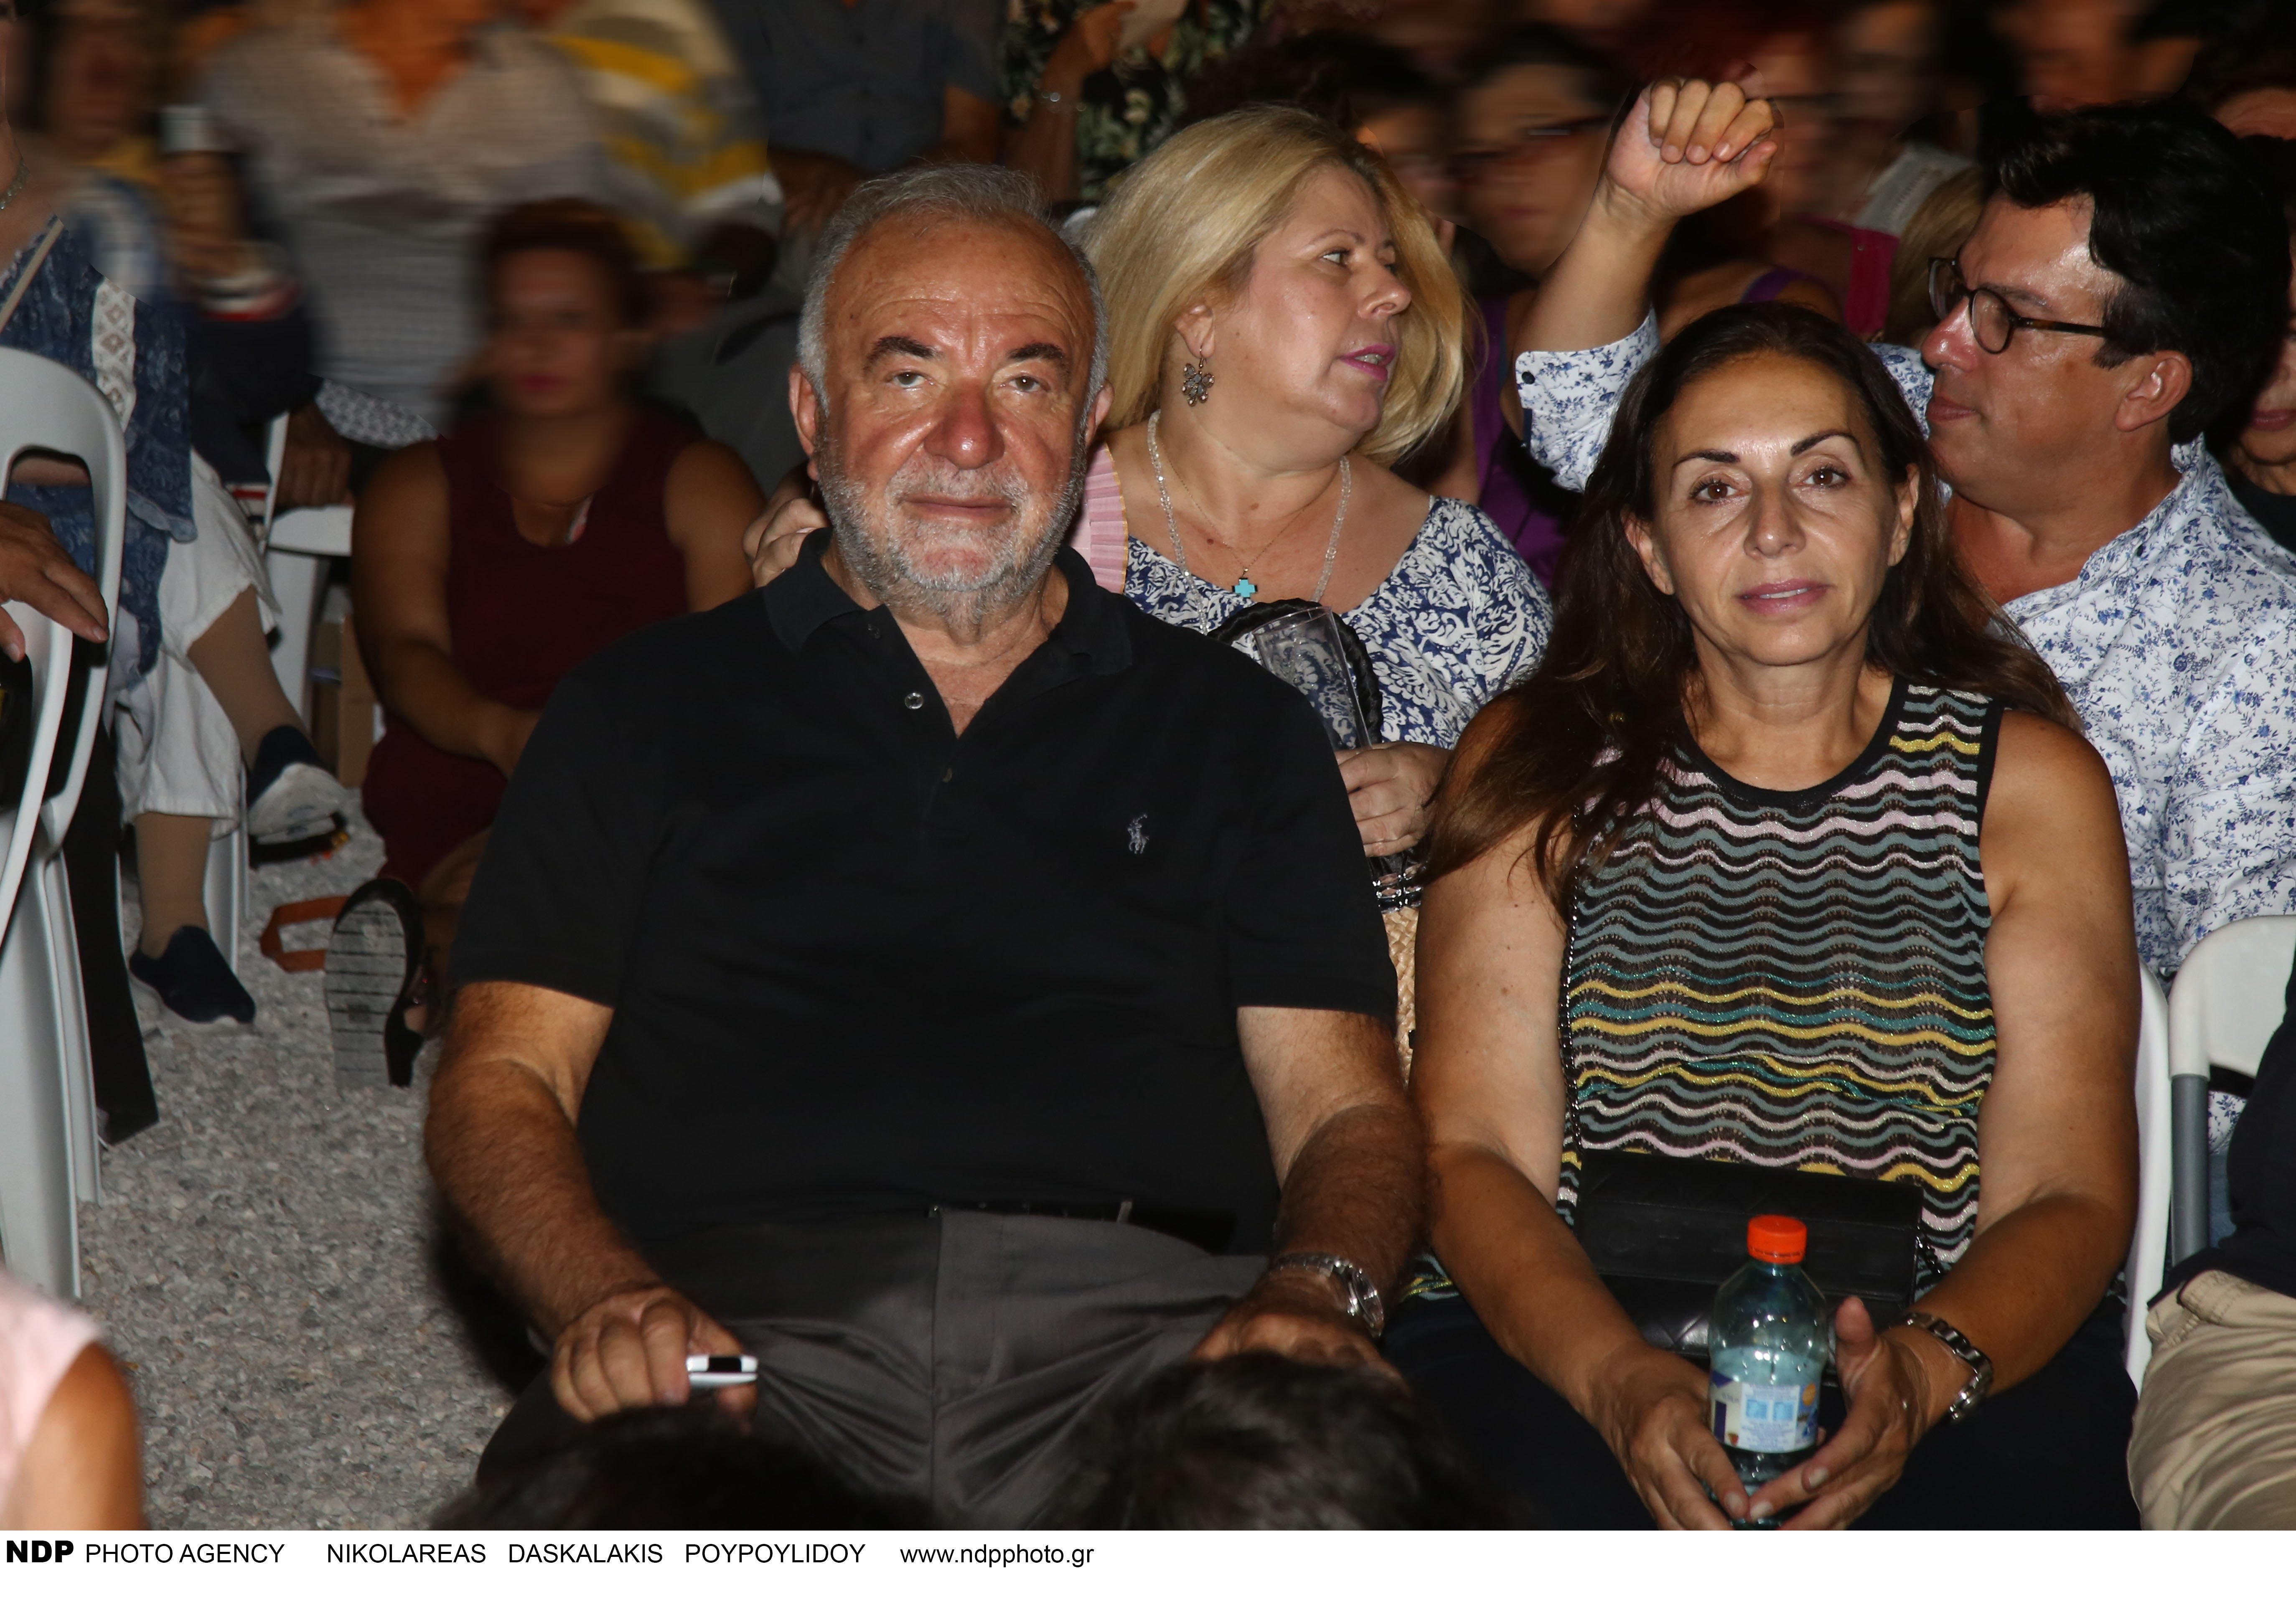 Βασίλης Σταθοκωστόπουλος: Αυτοί είναι οι γονείς του- Οι σχέσεις τους με την Κωνσταντίνα Σπυροπούλου